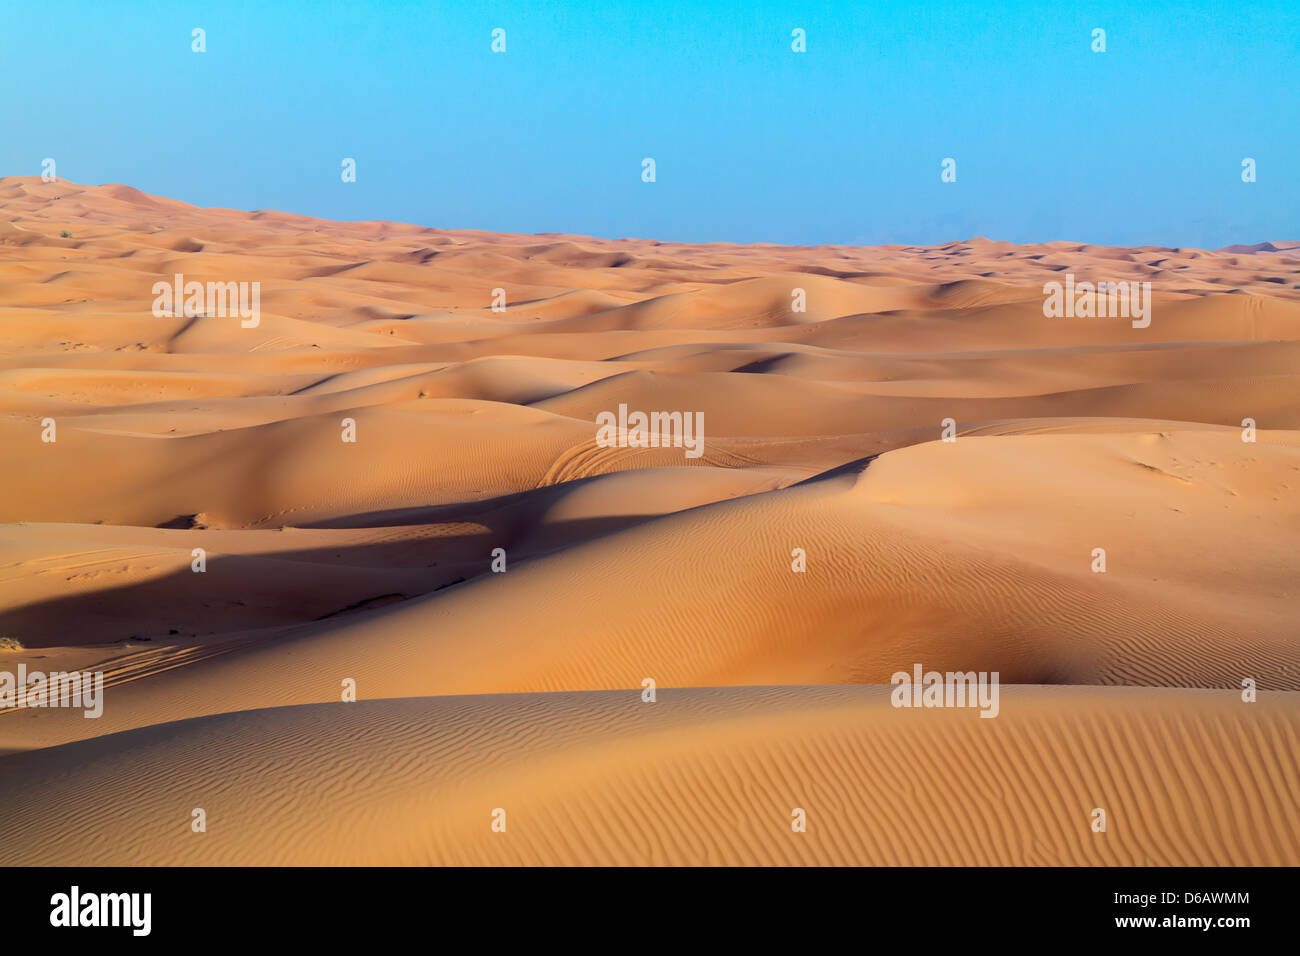 https://c8.alamy.com/comp/D6AWMM/arabian-desert-dune-background-on-blue-sky-desert-near-the-city-of-D6AWMM.jpg